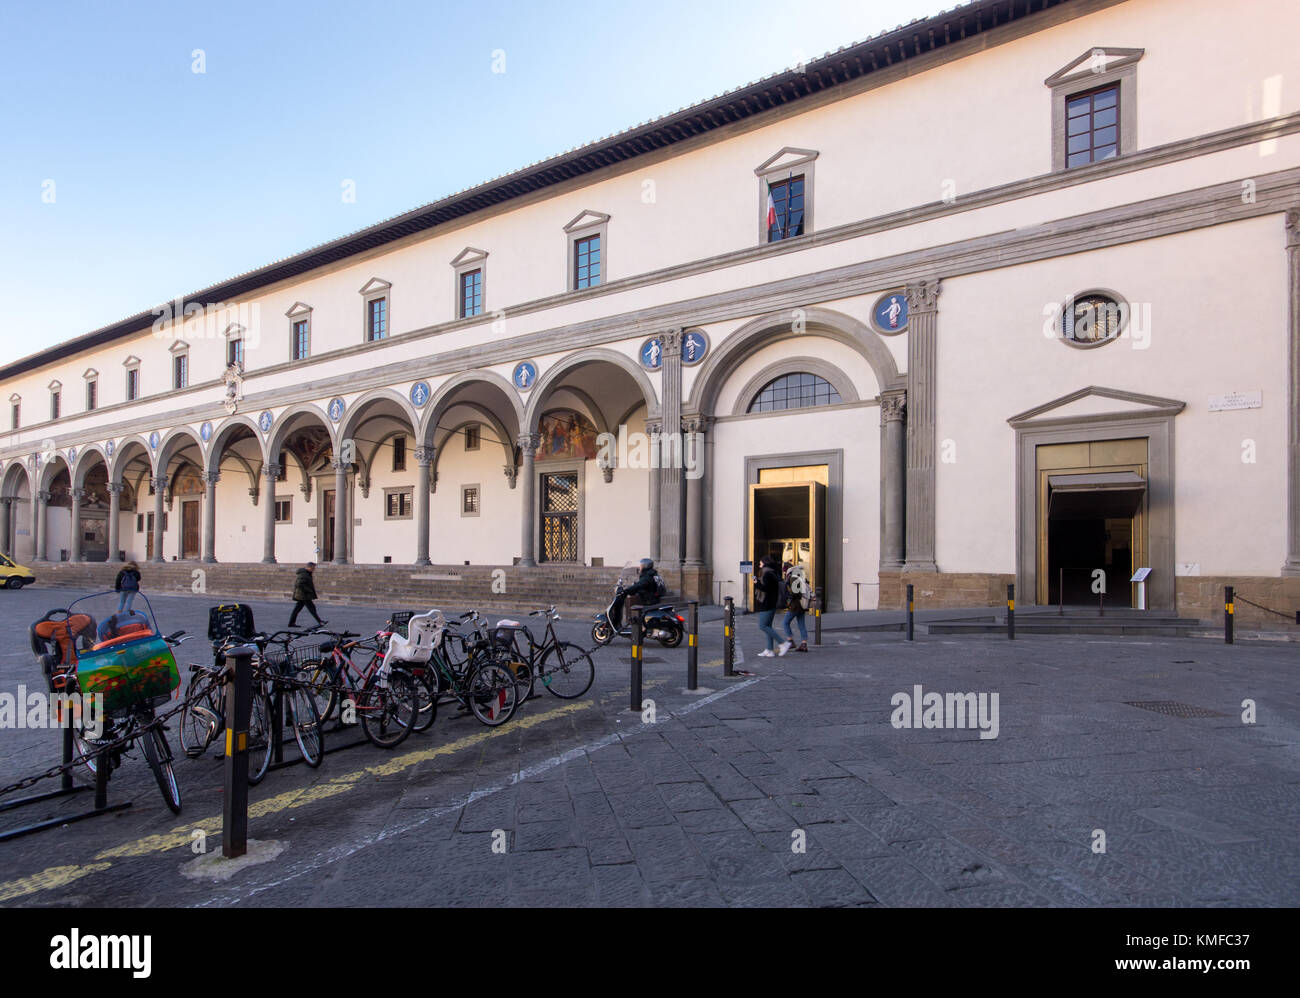 Fiippo Brunelleschi, Ospedale degli Innocenti, 1417-1436, facade & portico, Italian Renaissance architecture, Museo degli Innocenti museum, Florence Stock Photo